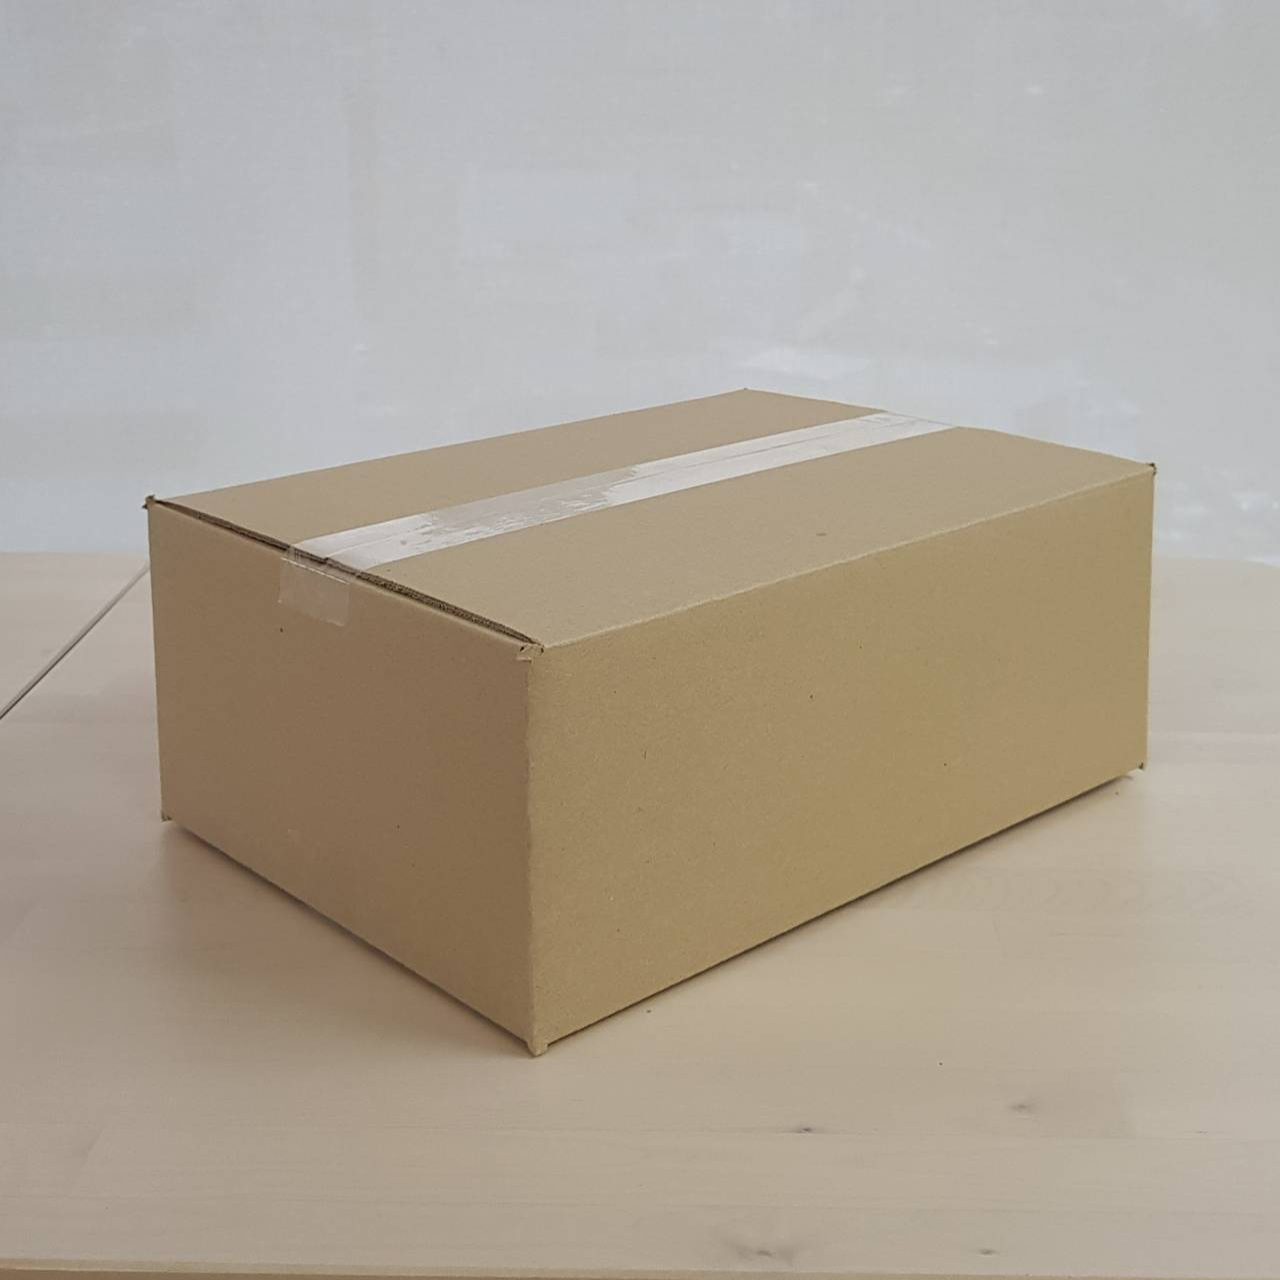 ダンボール箱オーダーメイドの制作事例-370x265x145